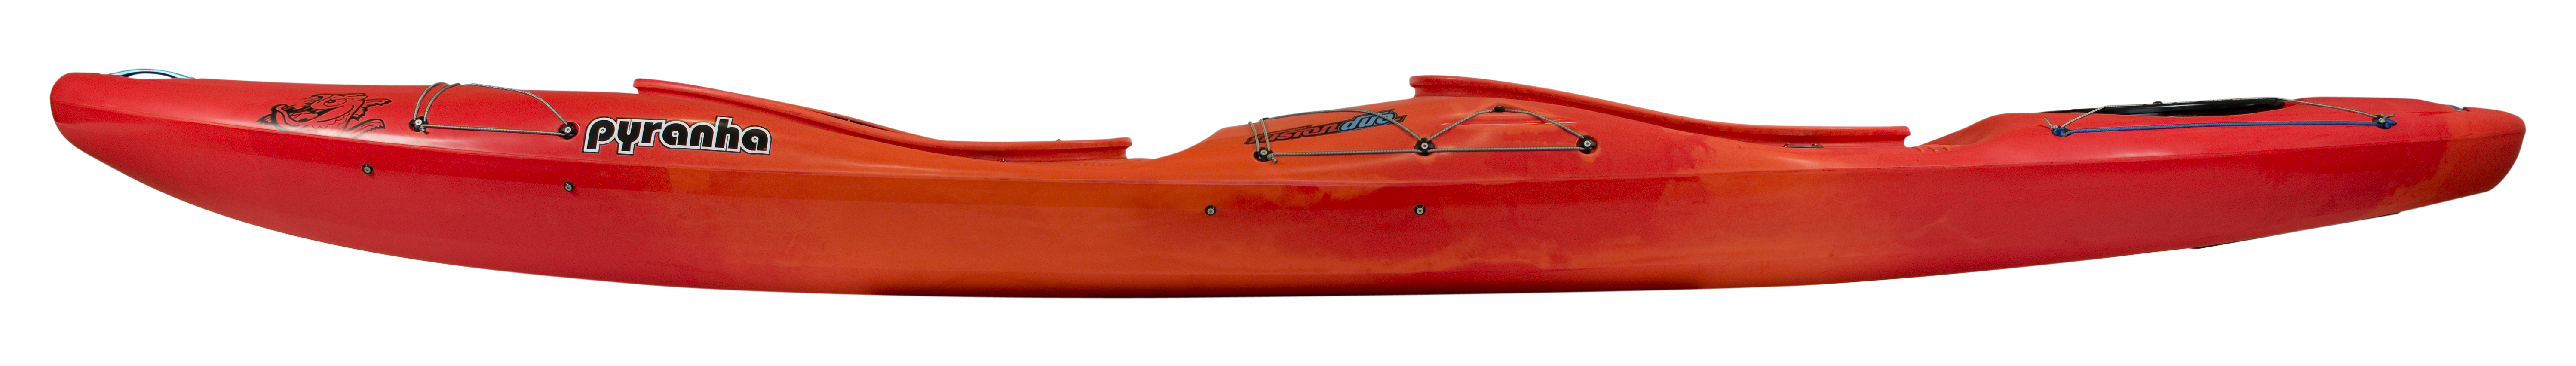 Kayaks: Fusion Duo by Pyranha - Image 4451